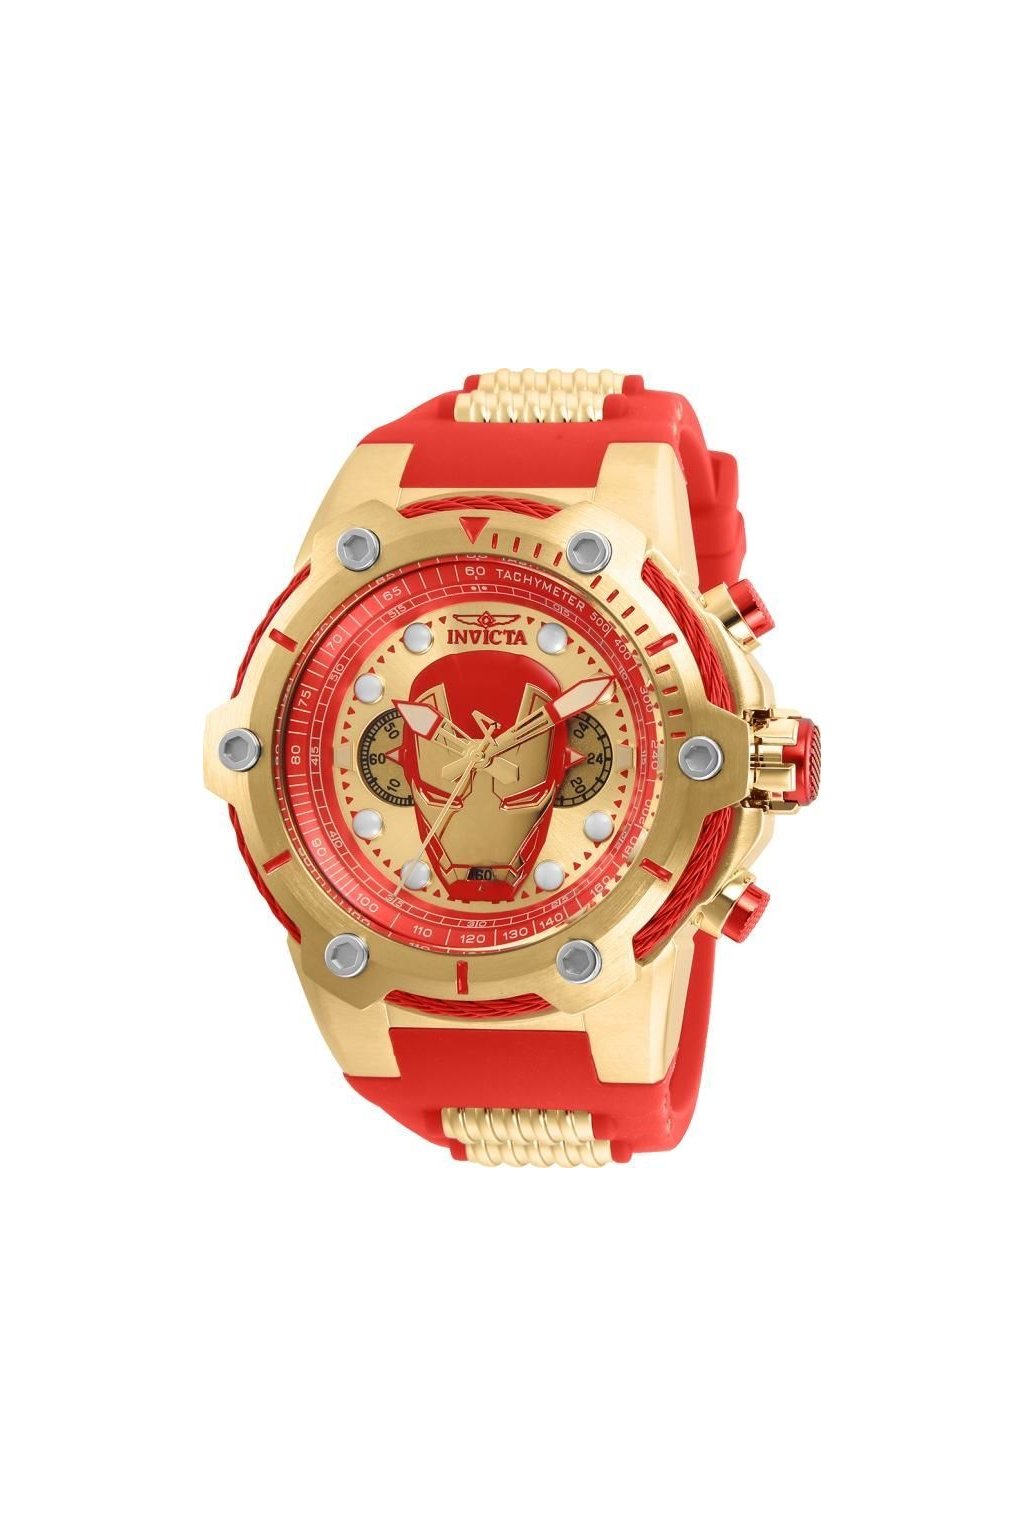 Pánské hodinky Invicta Ironman 26906 + Kufr Invicta v hodnotě 1000 Kč  ZDARMA - Hodinky INVICTA